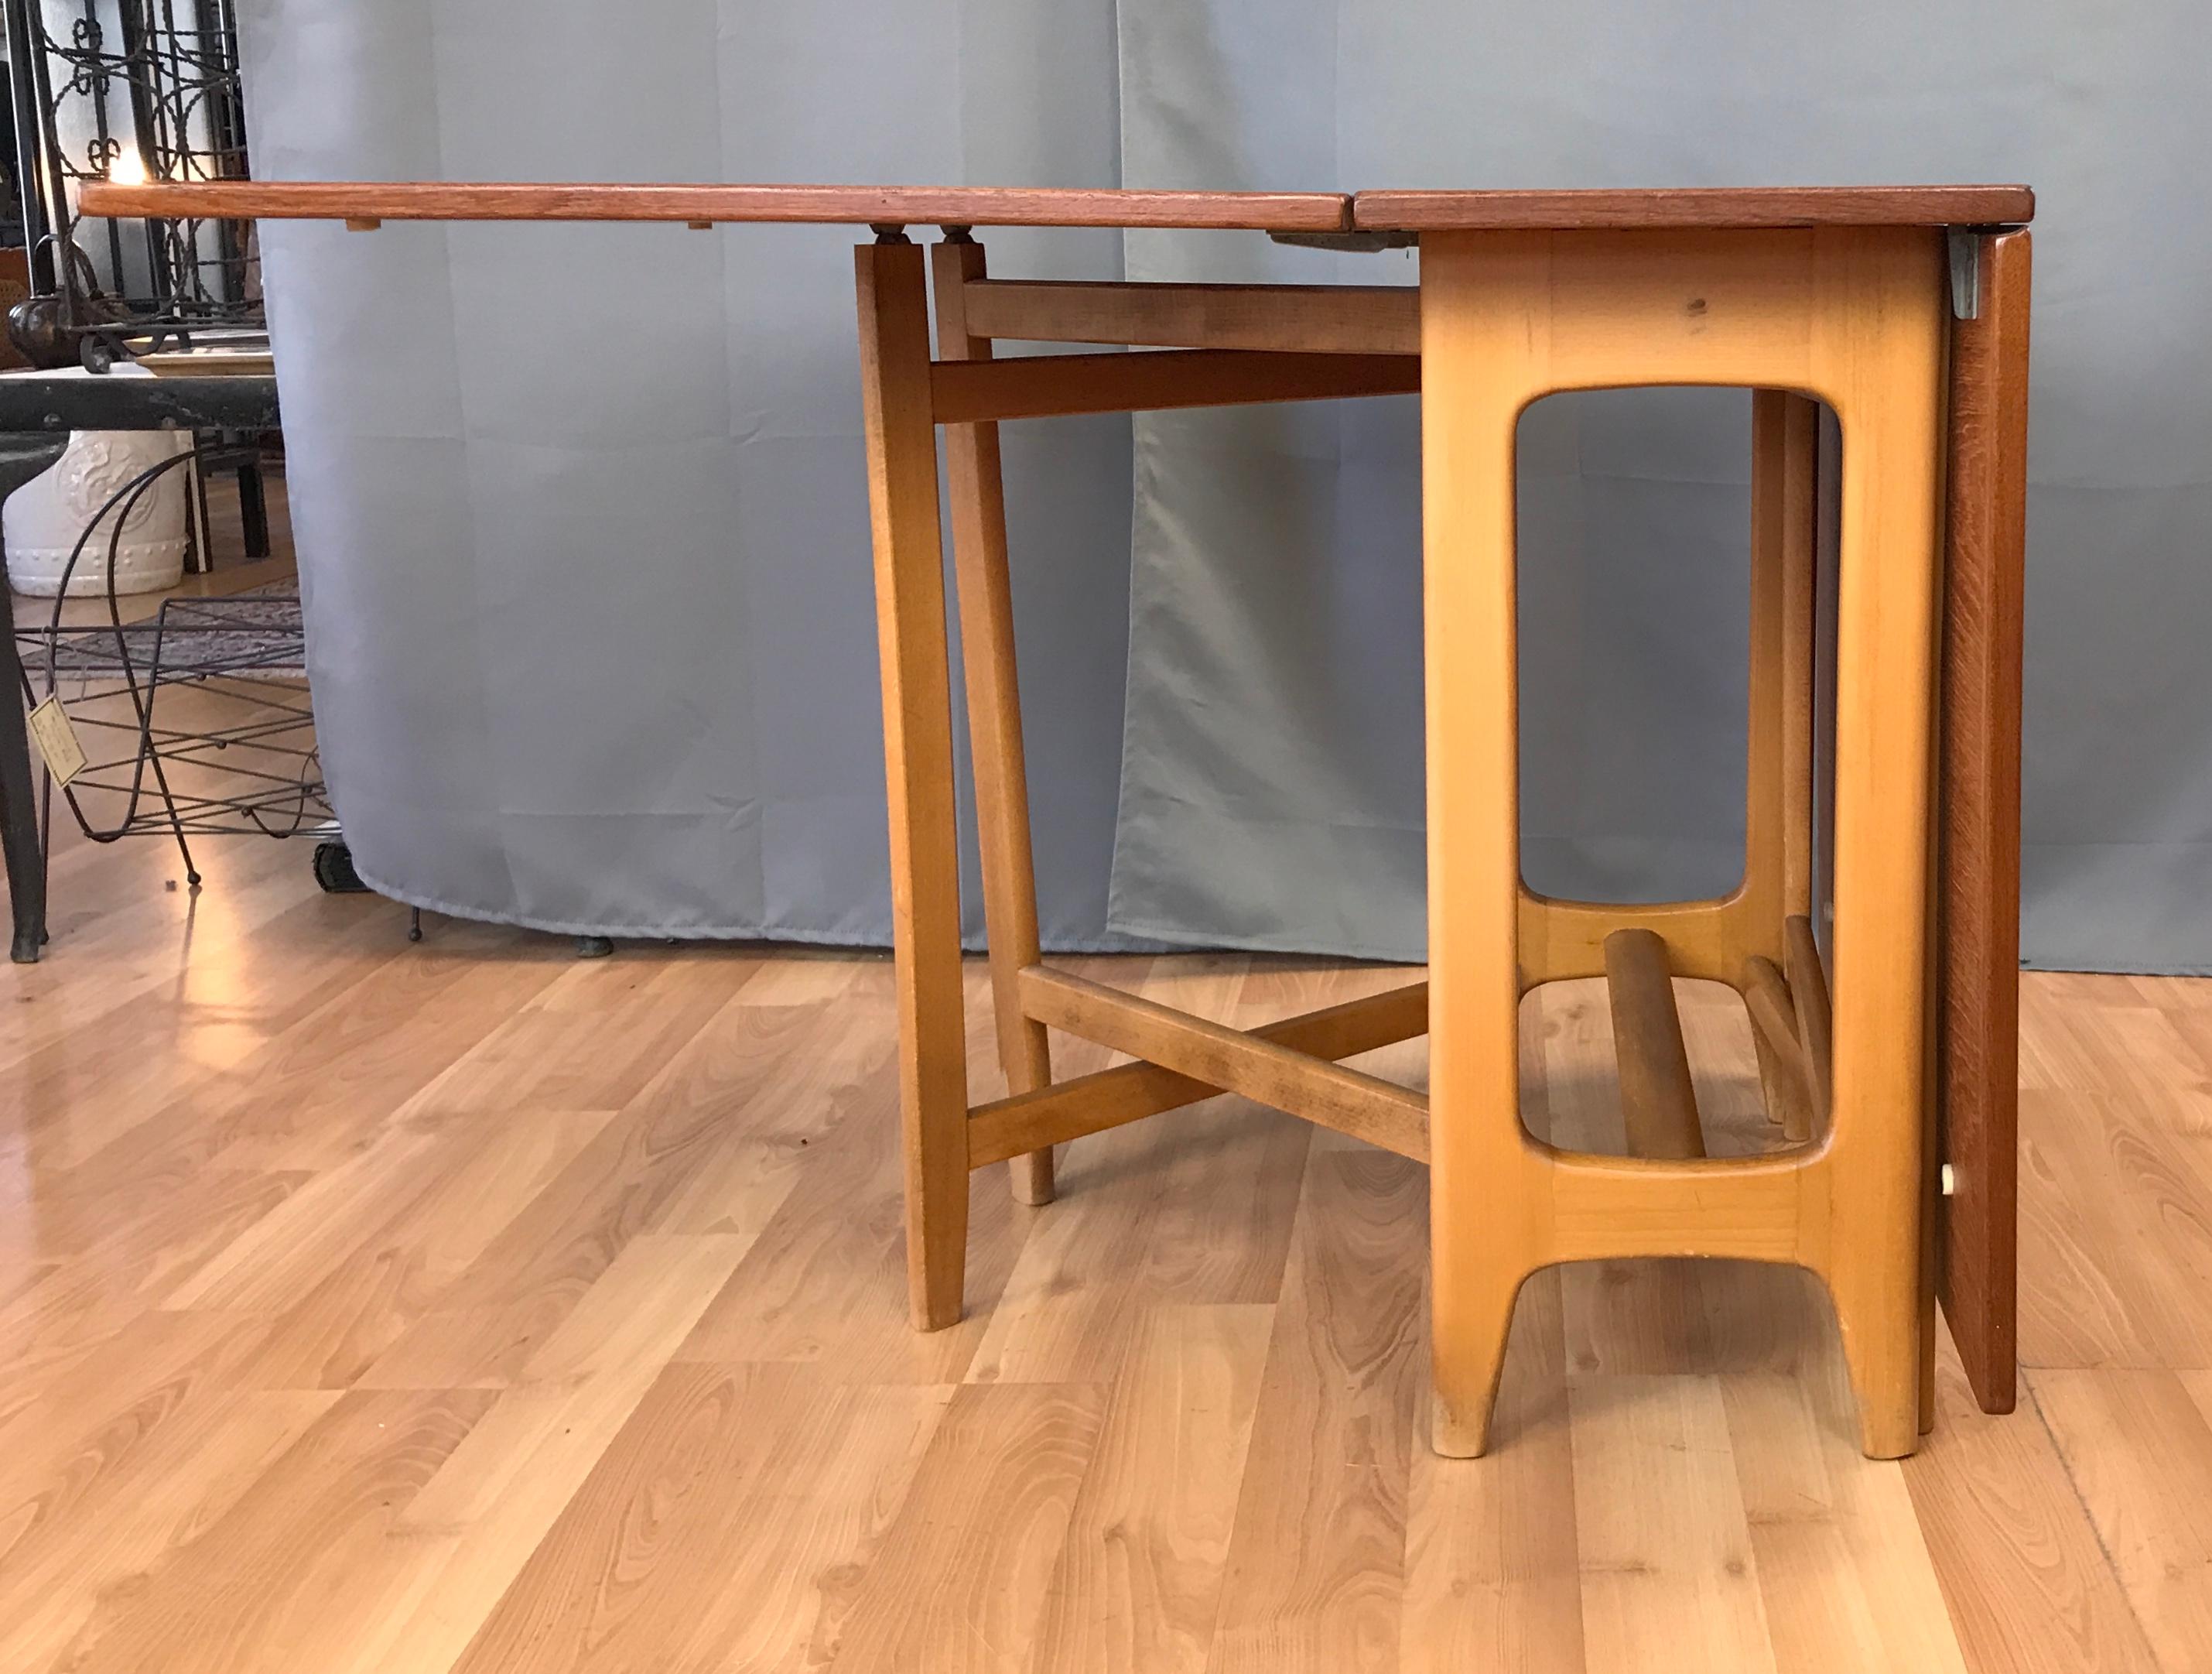 Beech Bendt Winge Designed Drop-Leaf Dining Table for Kleppe Møbelfabrik